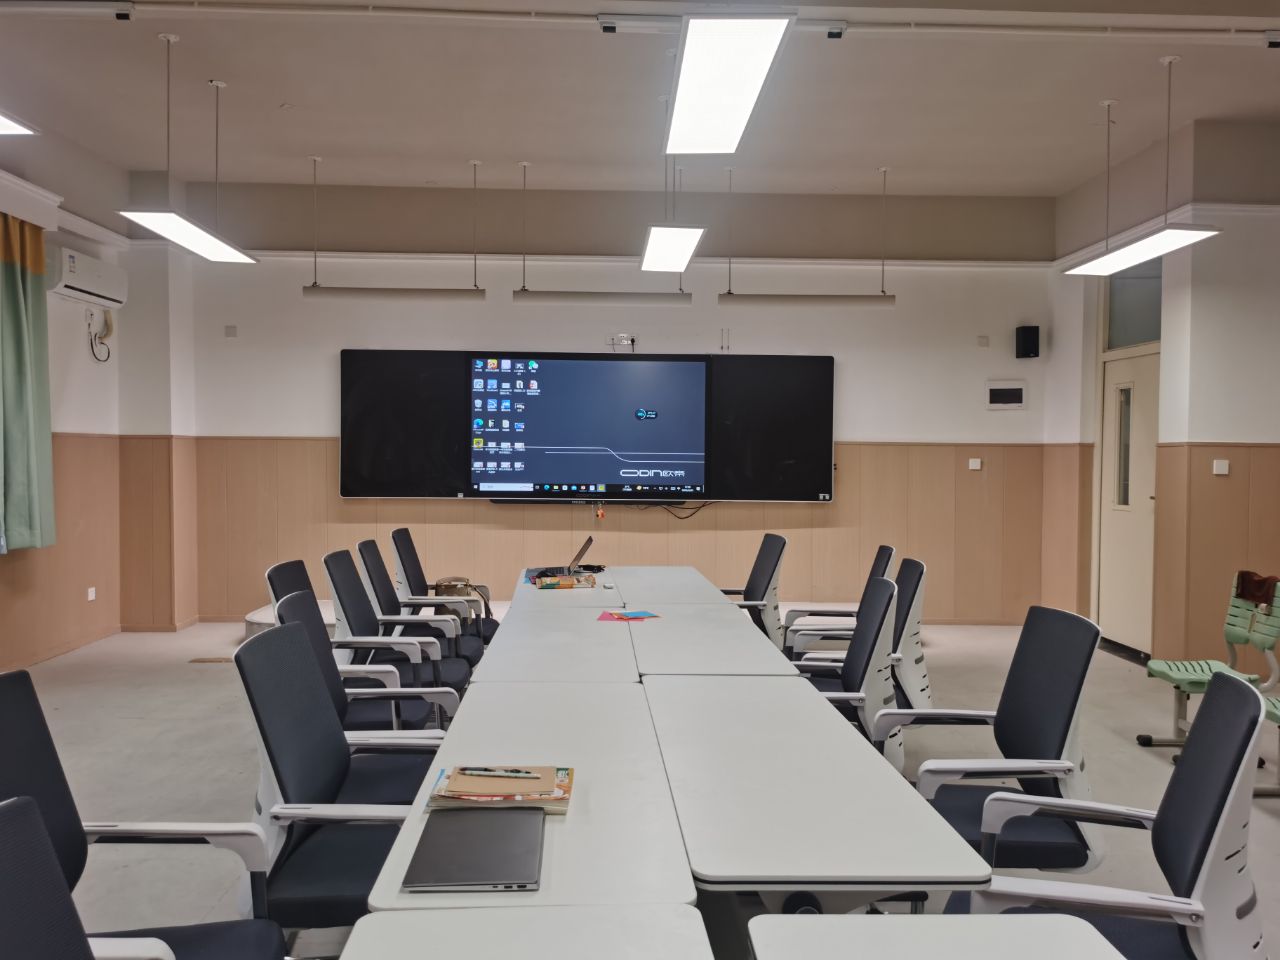 欧帝科技发布新一代智慧黑板,推动数字教室建设进入新阶段